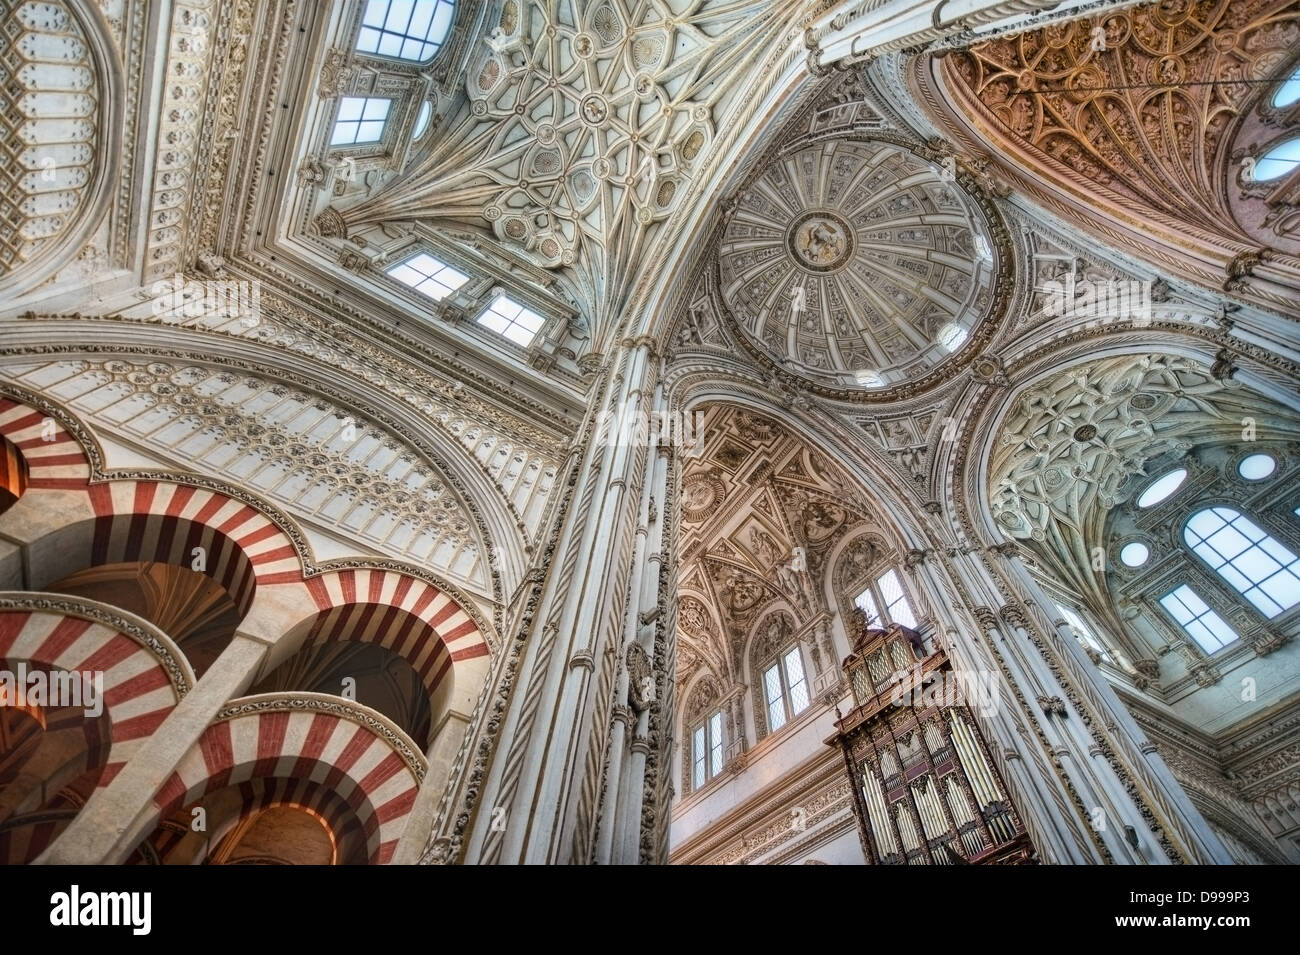 Die Kathedrale in der Mezquita von Cordoba gilt als eines der schönsten Denkmäler der Renaissance und maurischer Architektur Stockfoto